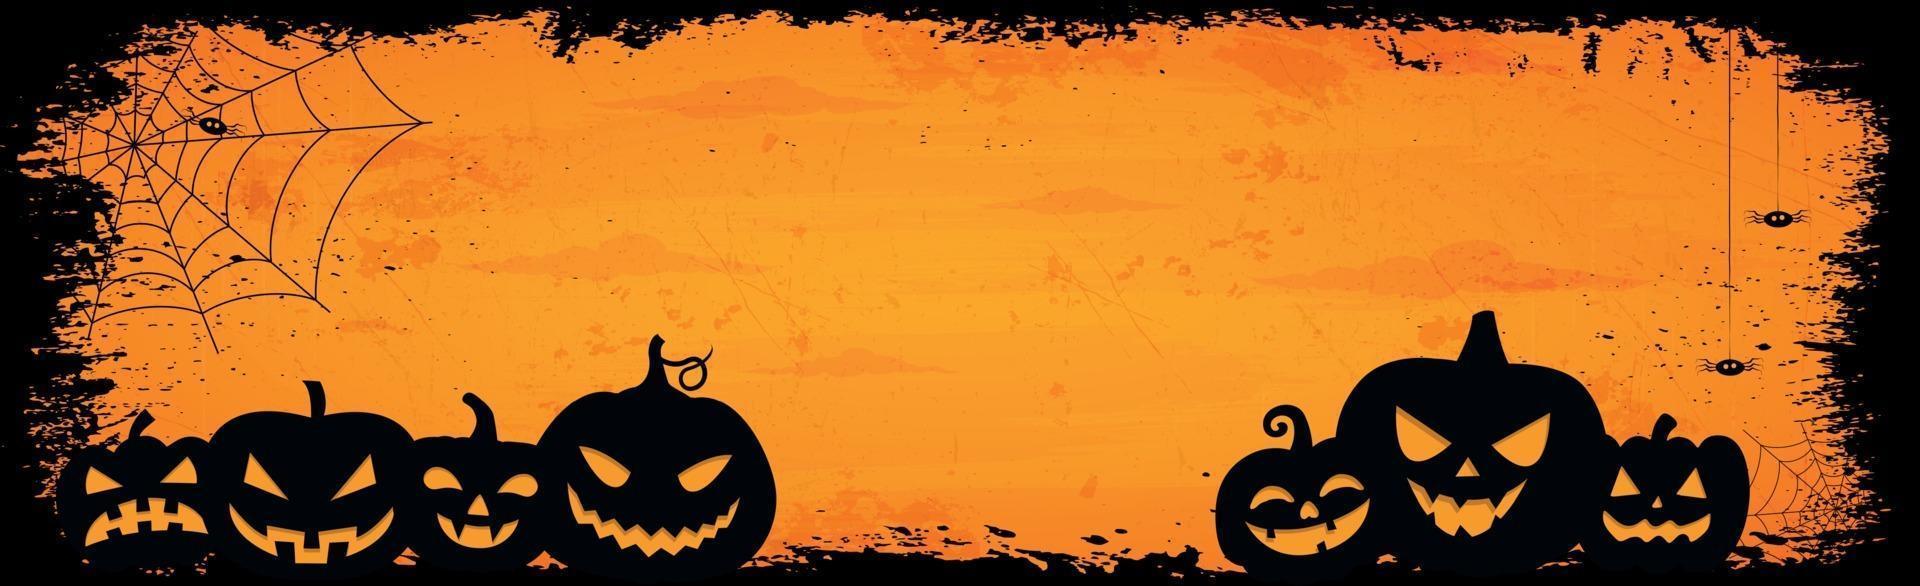 beängstigend düster orange Halloween Hintergrund - Vektor